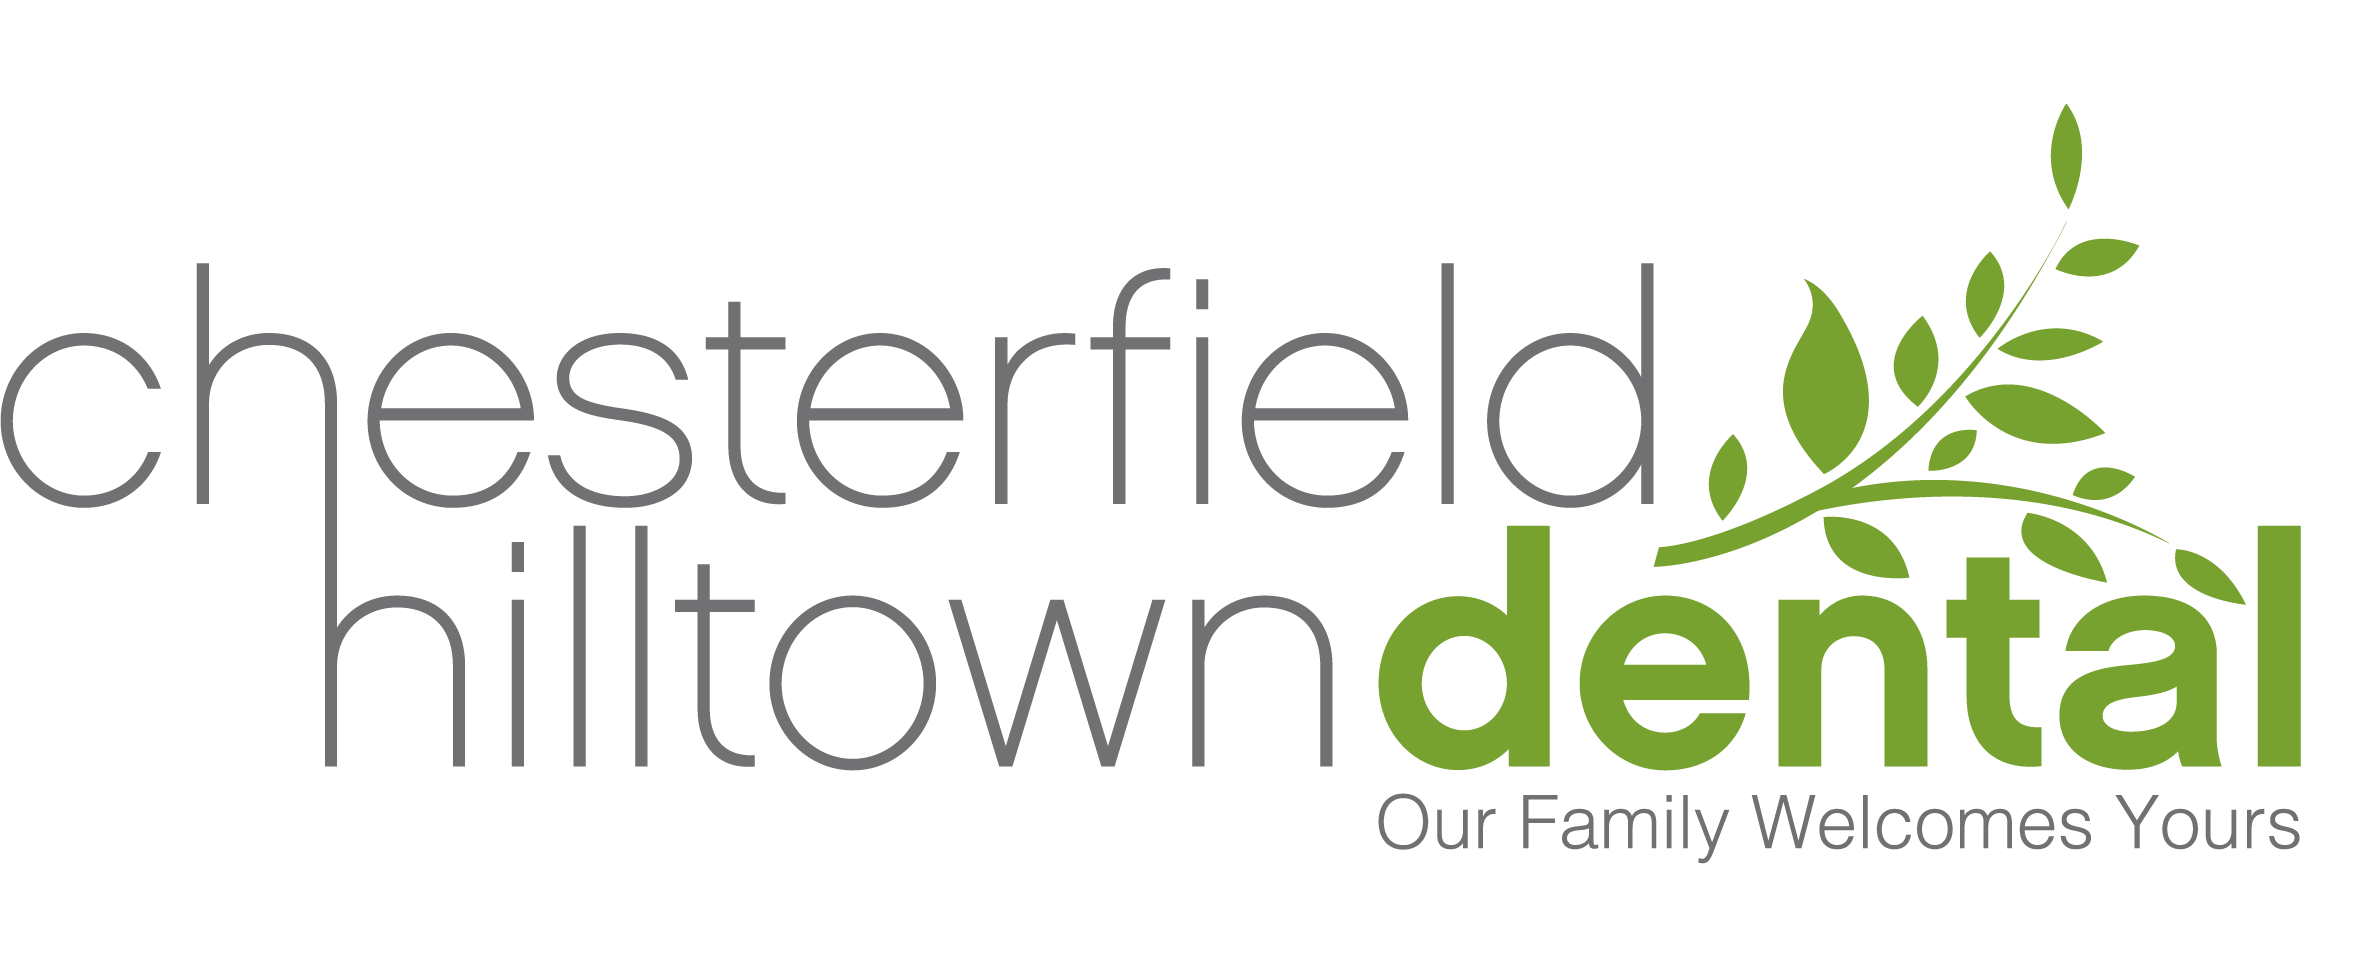 Chesterfield Logo - Chesterfield Hilltown Dental: Dentist in Chesterfield, Missouri 63017